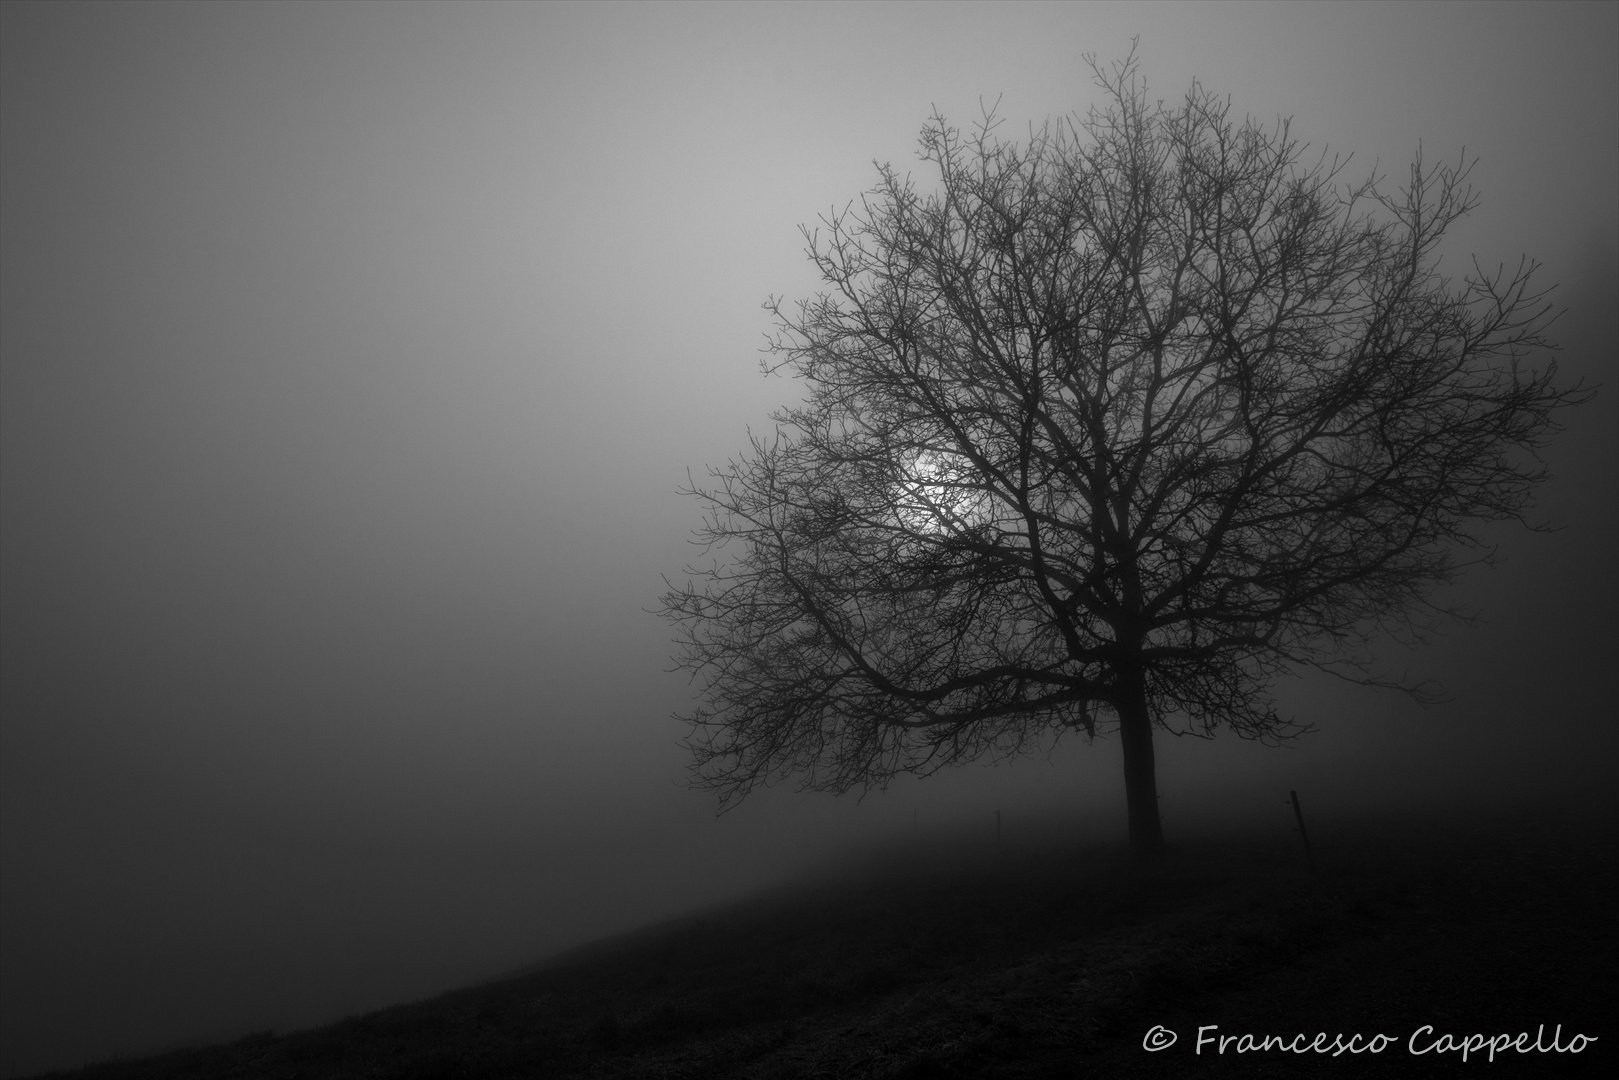 der Nebelbaum - tree in the mist